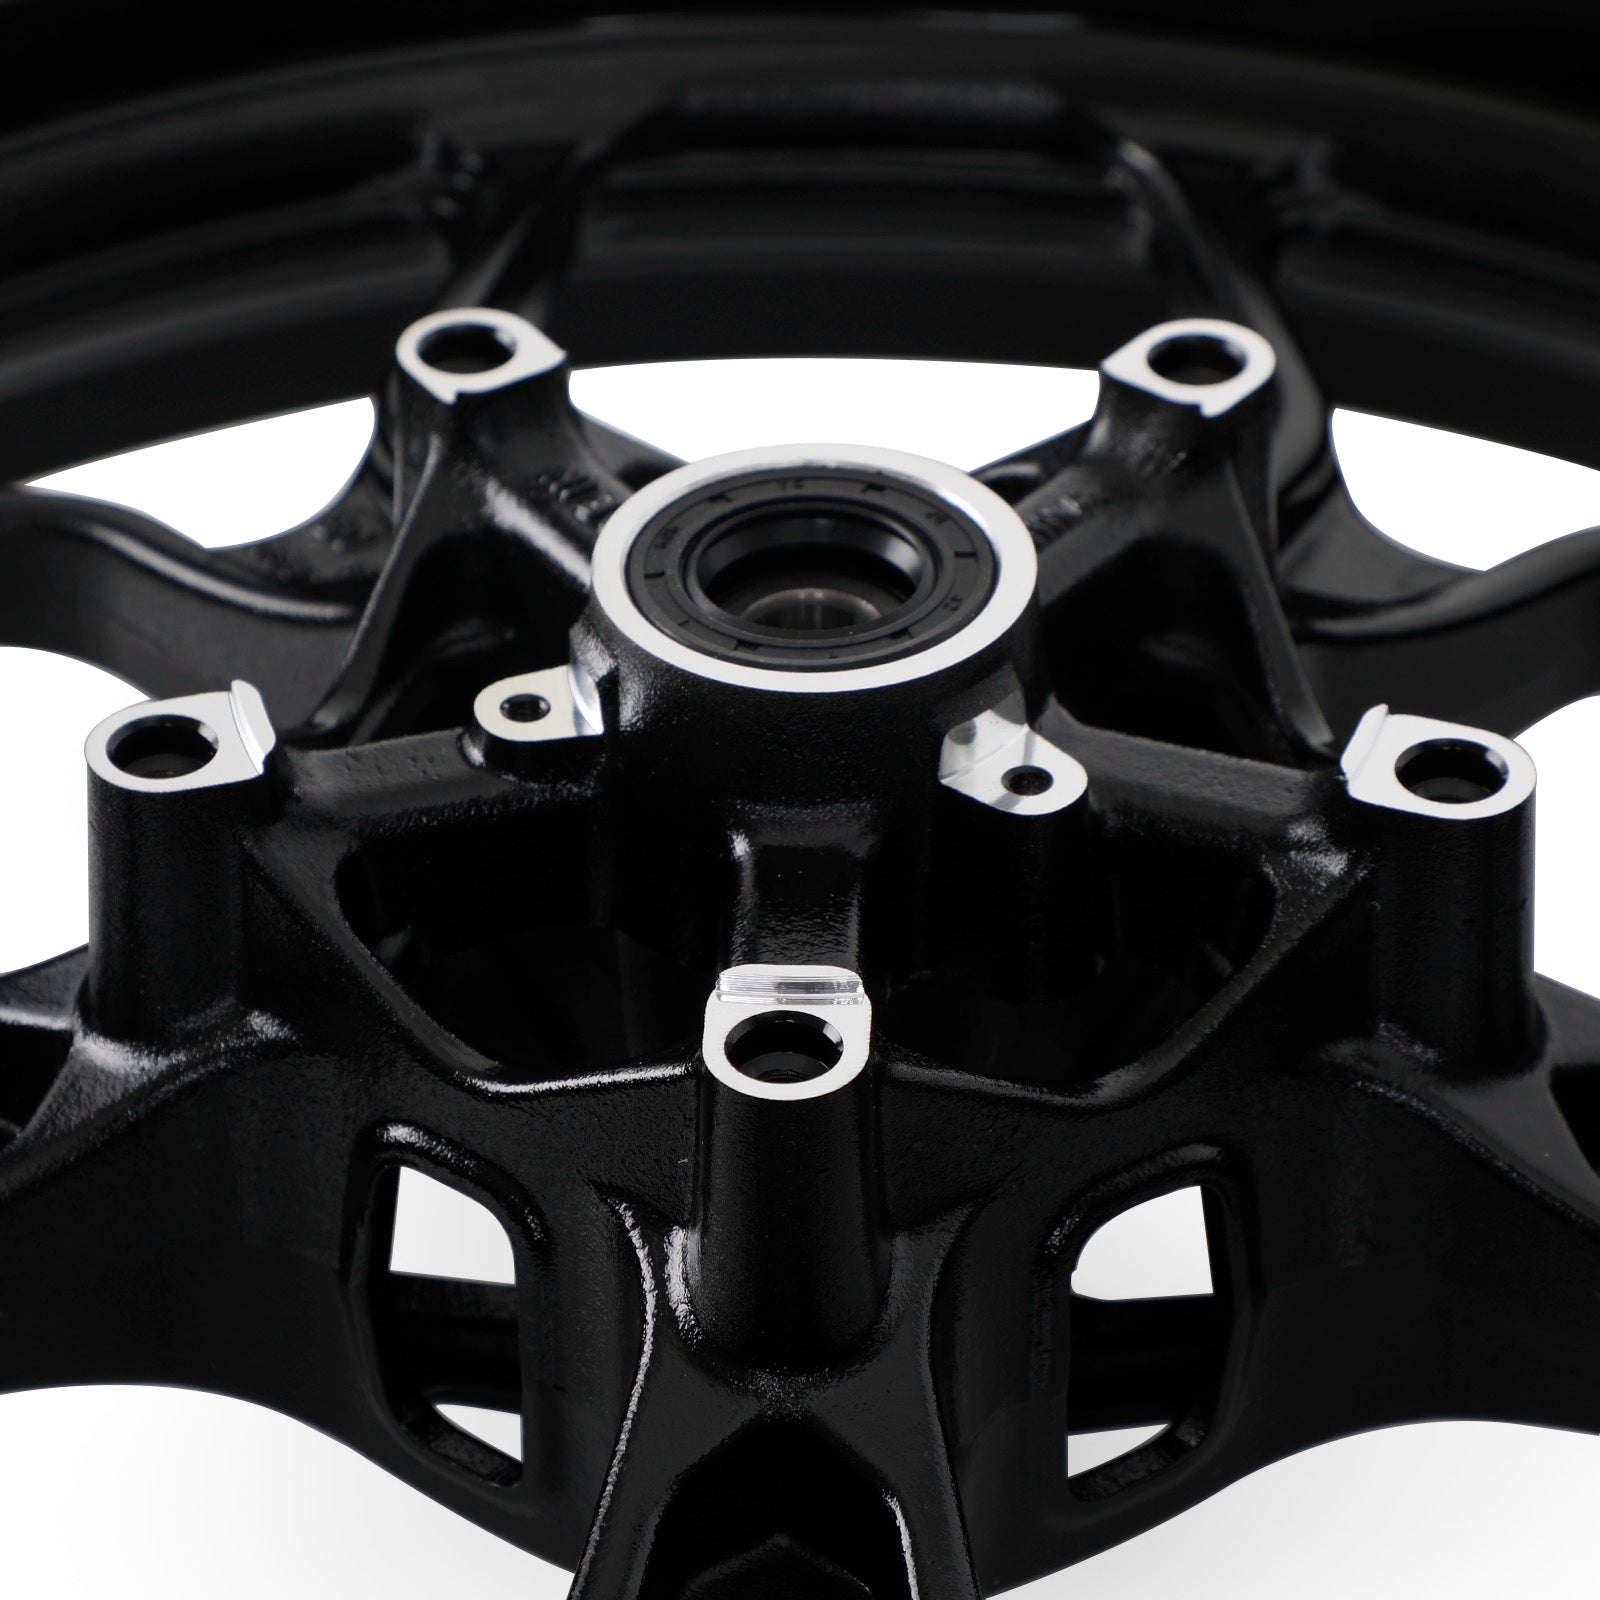 Cerchione completo anteriore e posteriore nero per Yamaha YZF R3 2015-2022 NUOVO